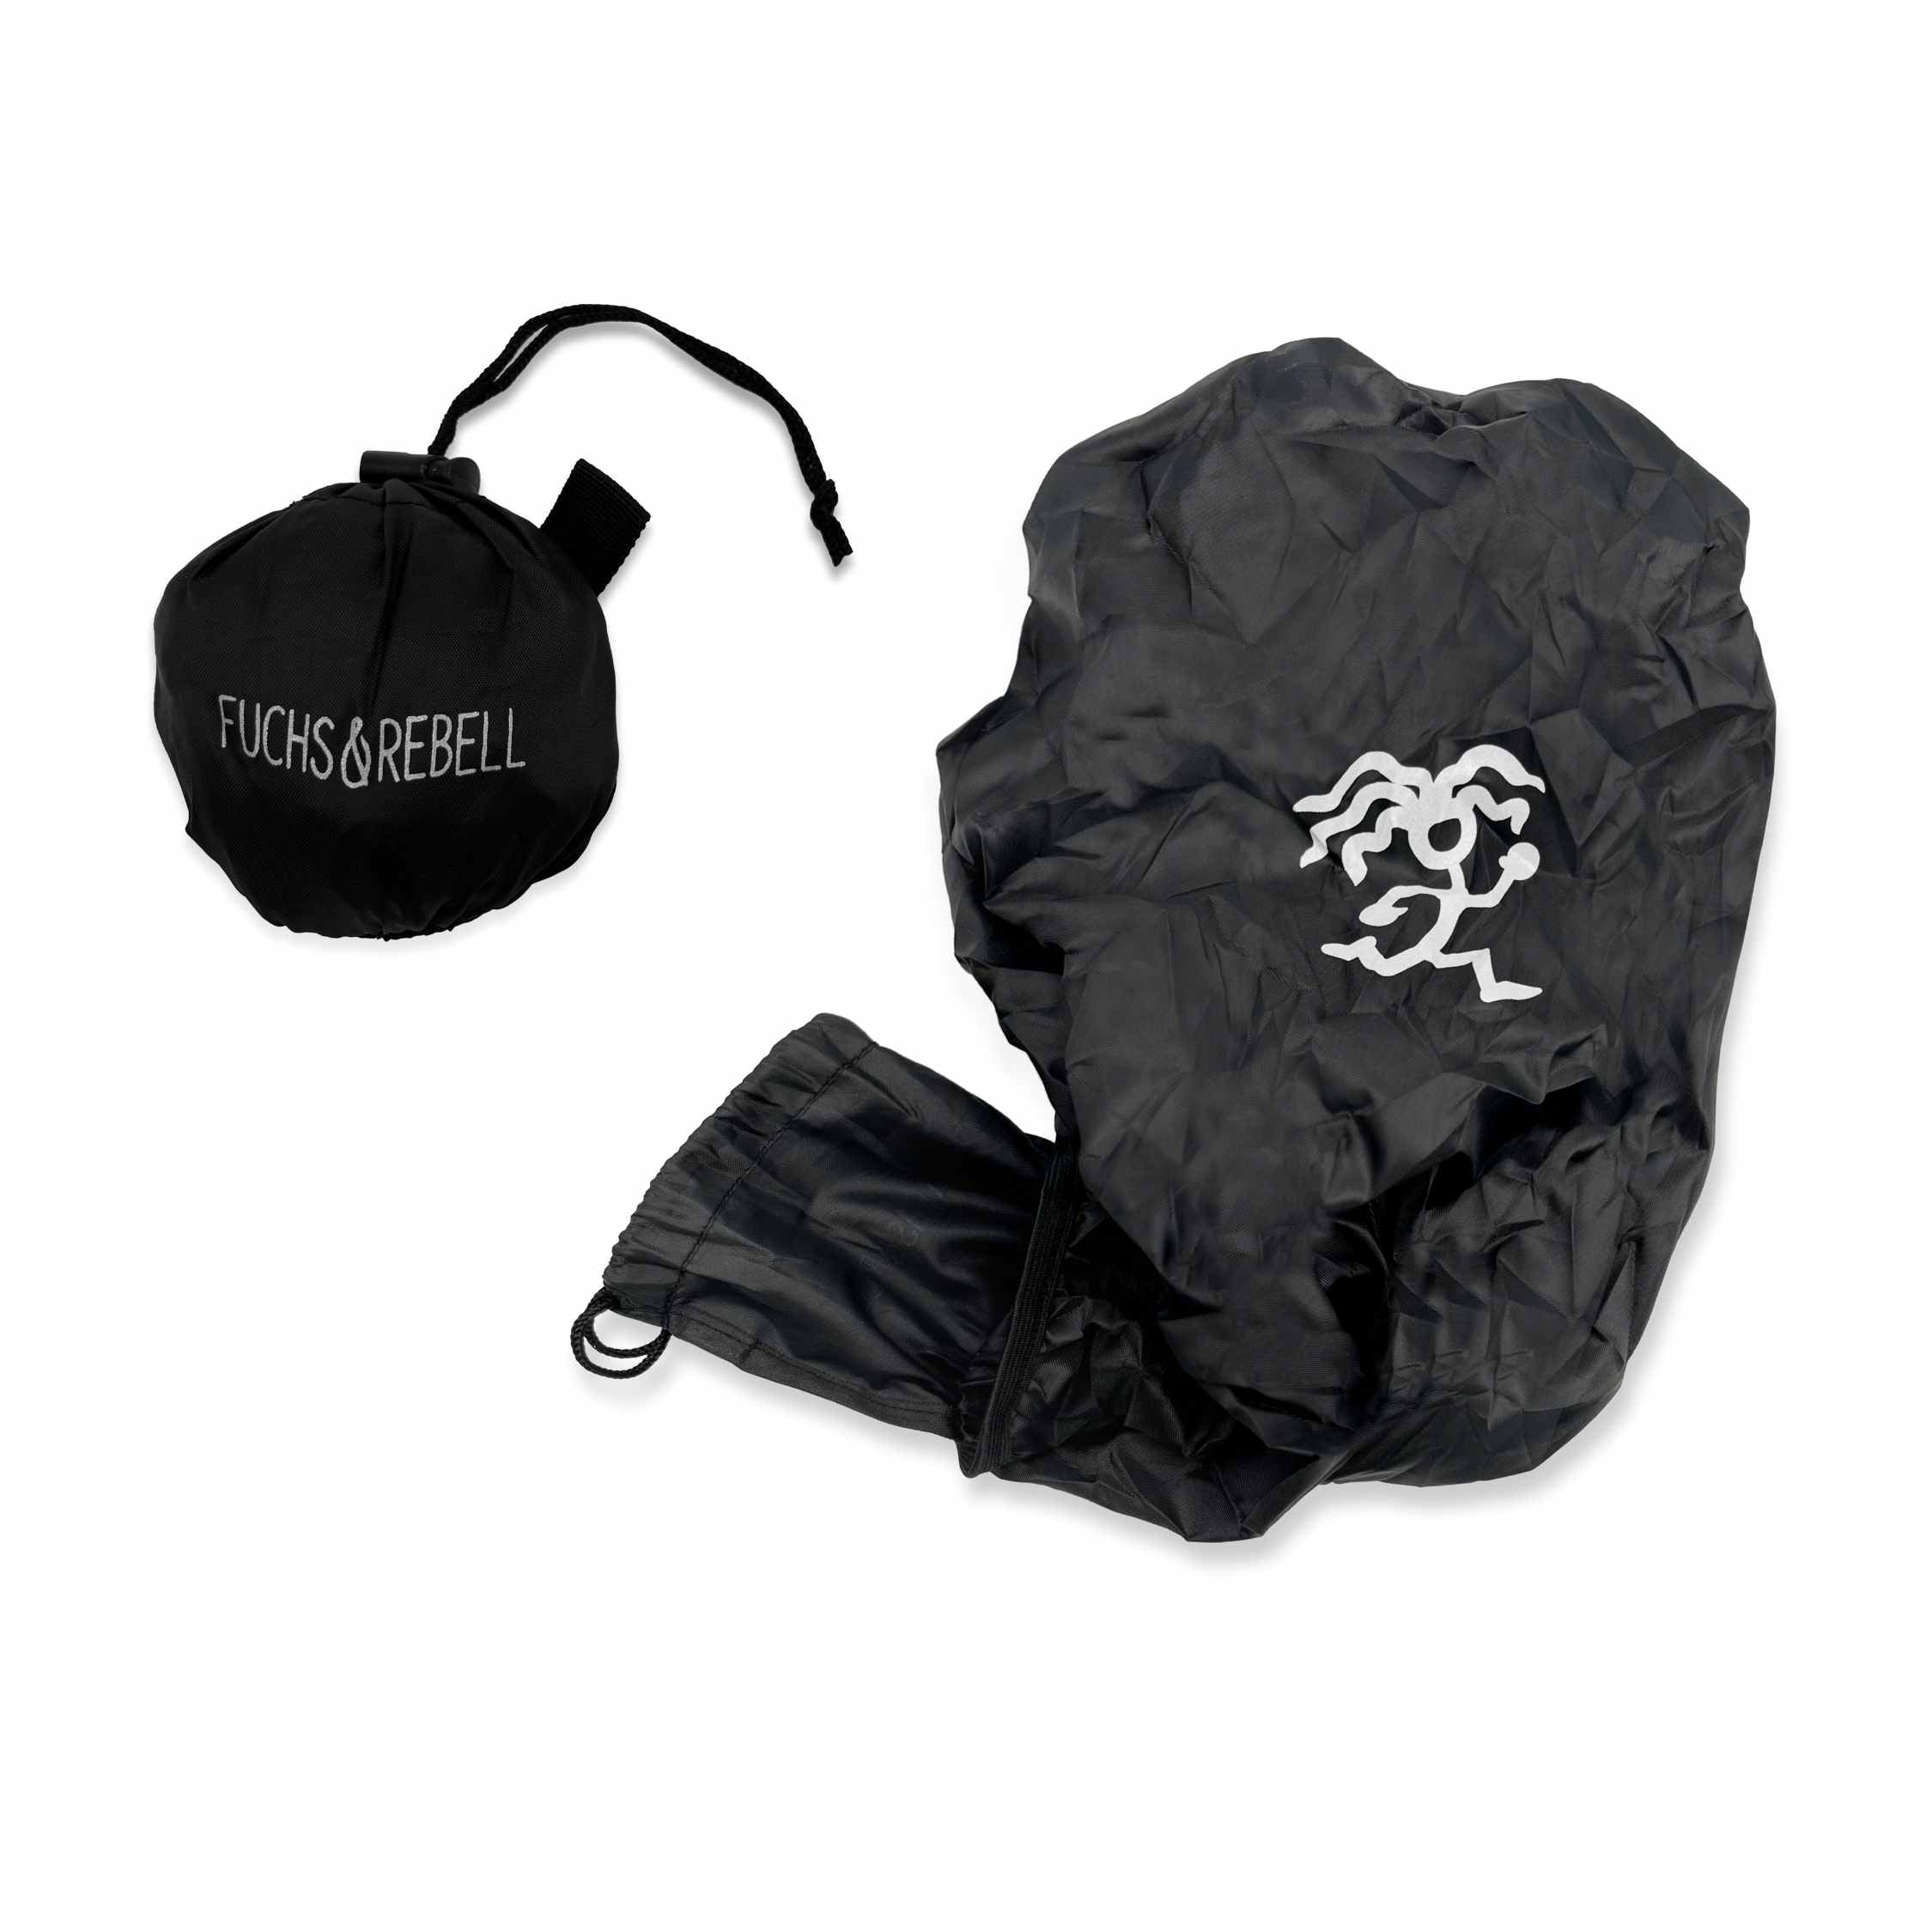 Regenschutzhuelle in schwarz mit reflektierendem Logo und integrierter Tasche für mehr Sicherheit im Dunkeln und Schutz vor Regen und Schnee